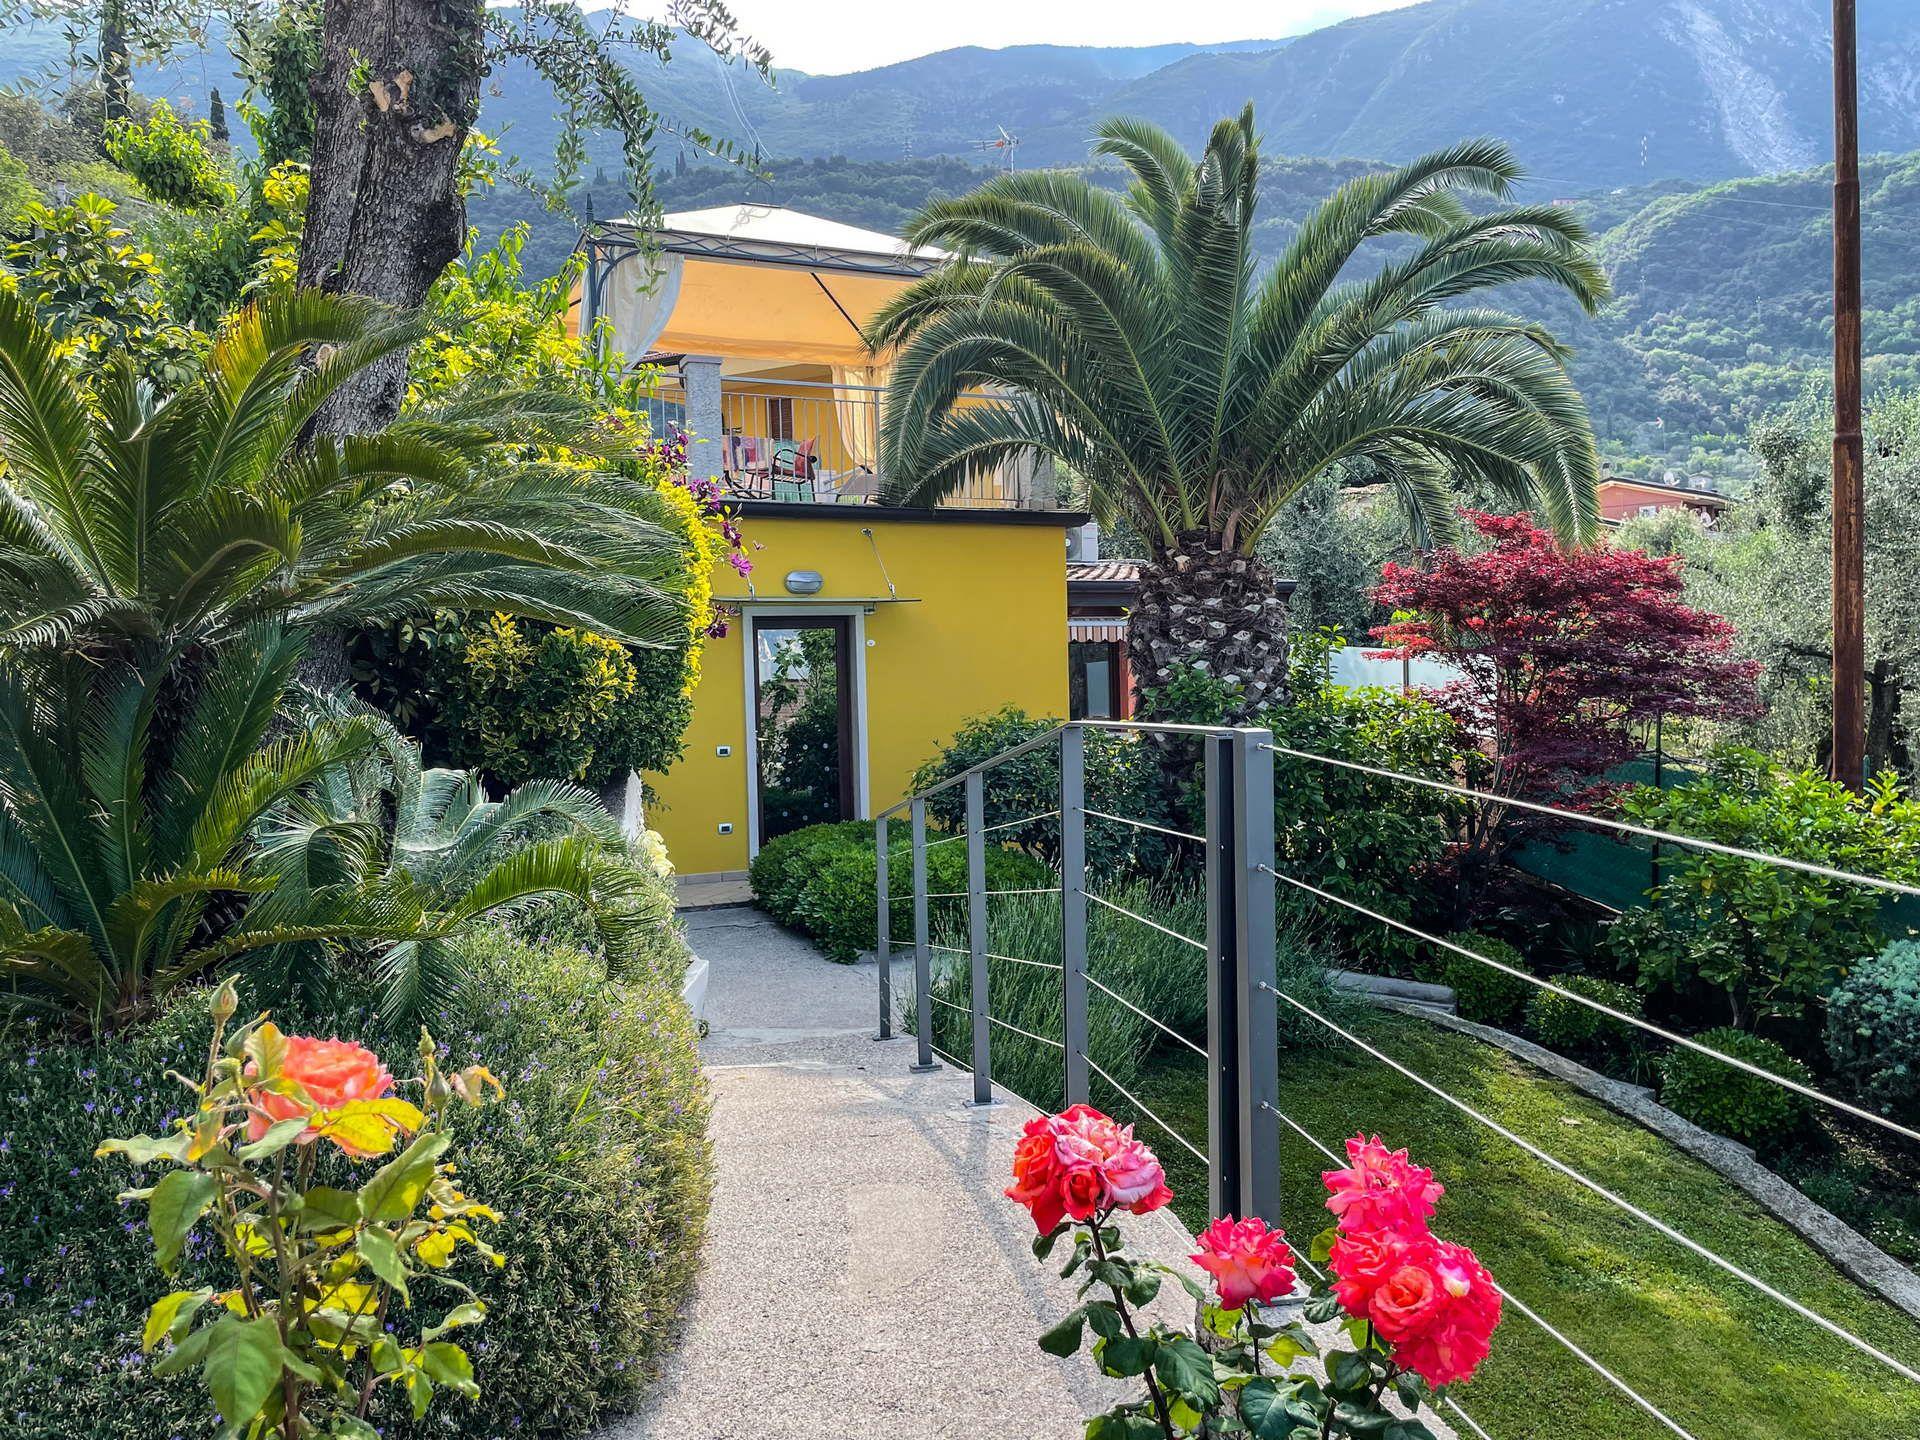 Ferienhaus mit herrlicher Dachterrasse mit Seeblic Ferienhaus  Gardasee - Lago di Garda